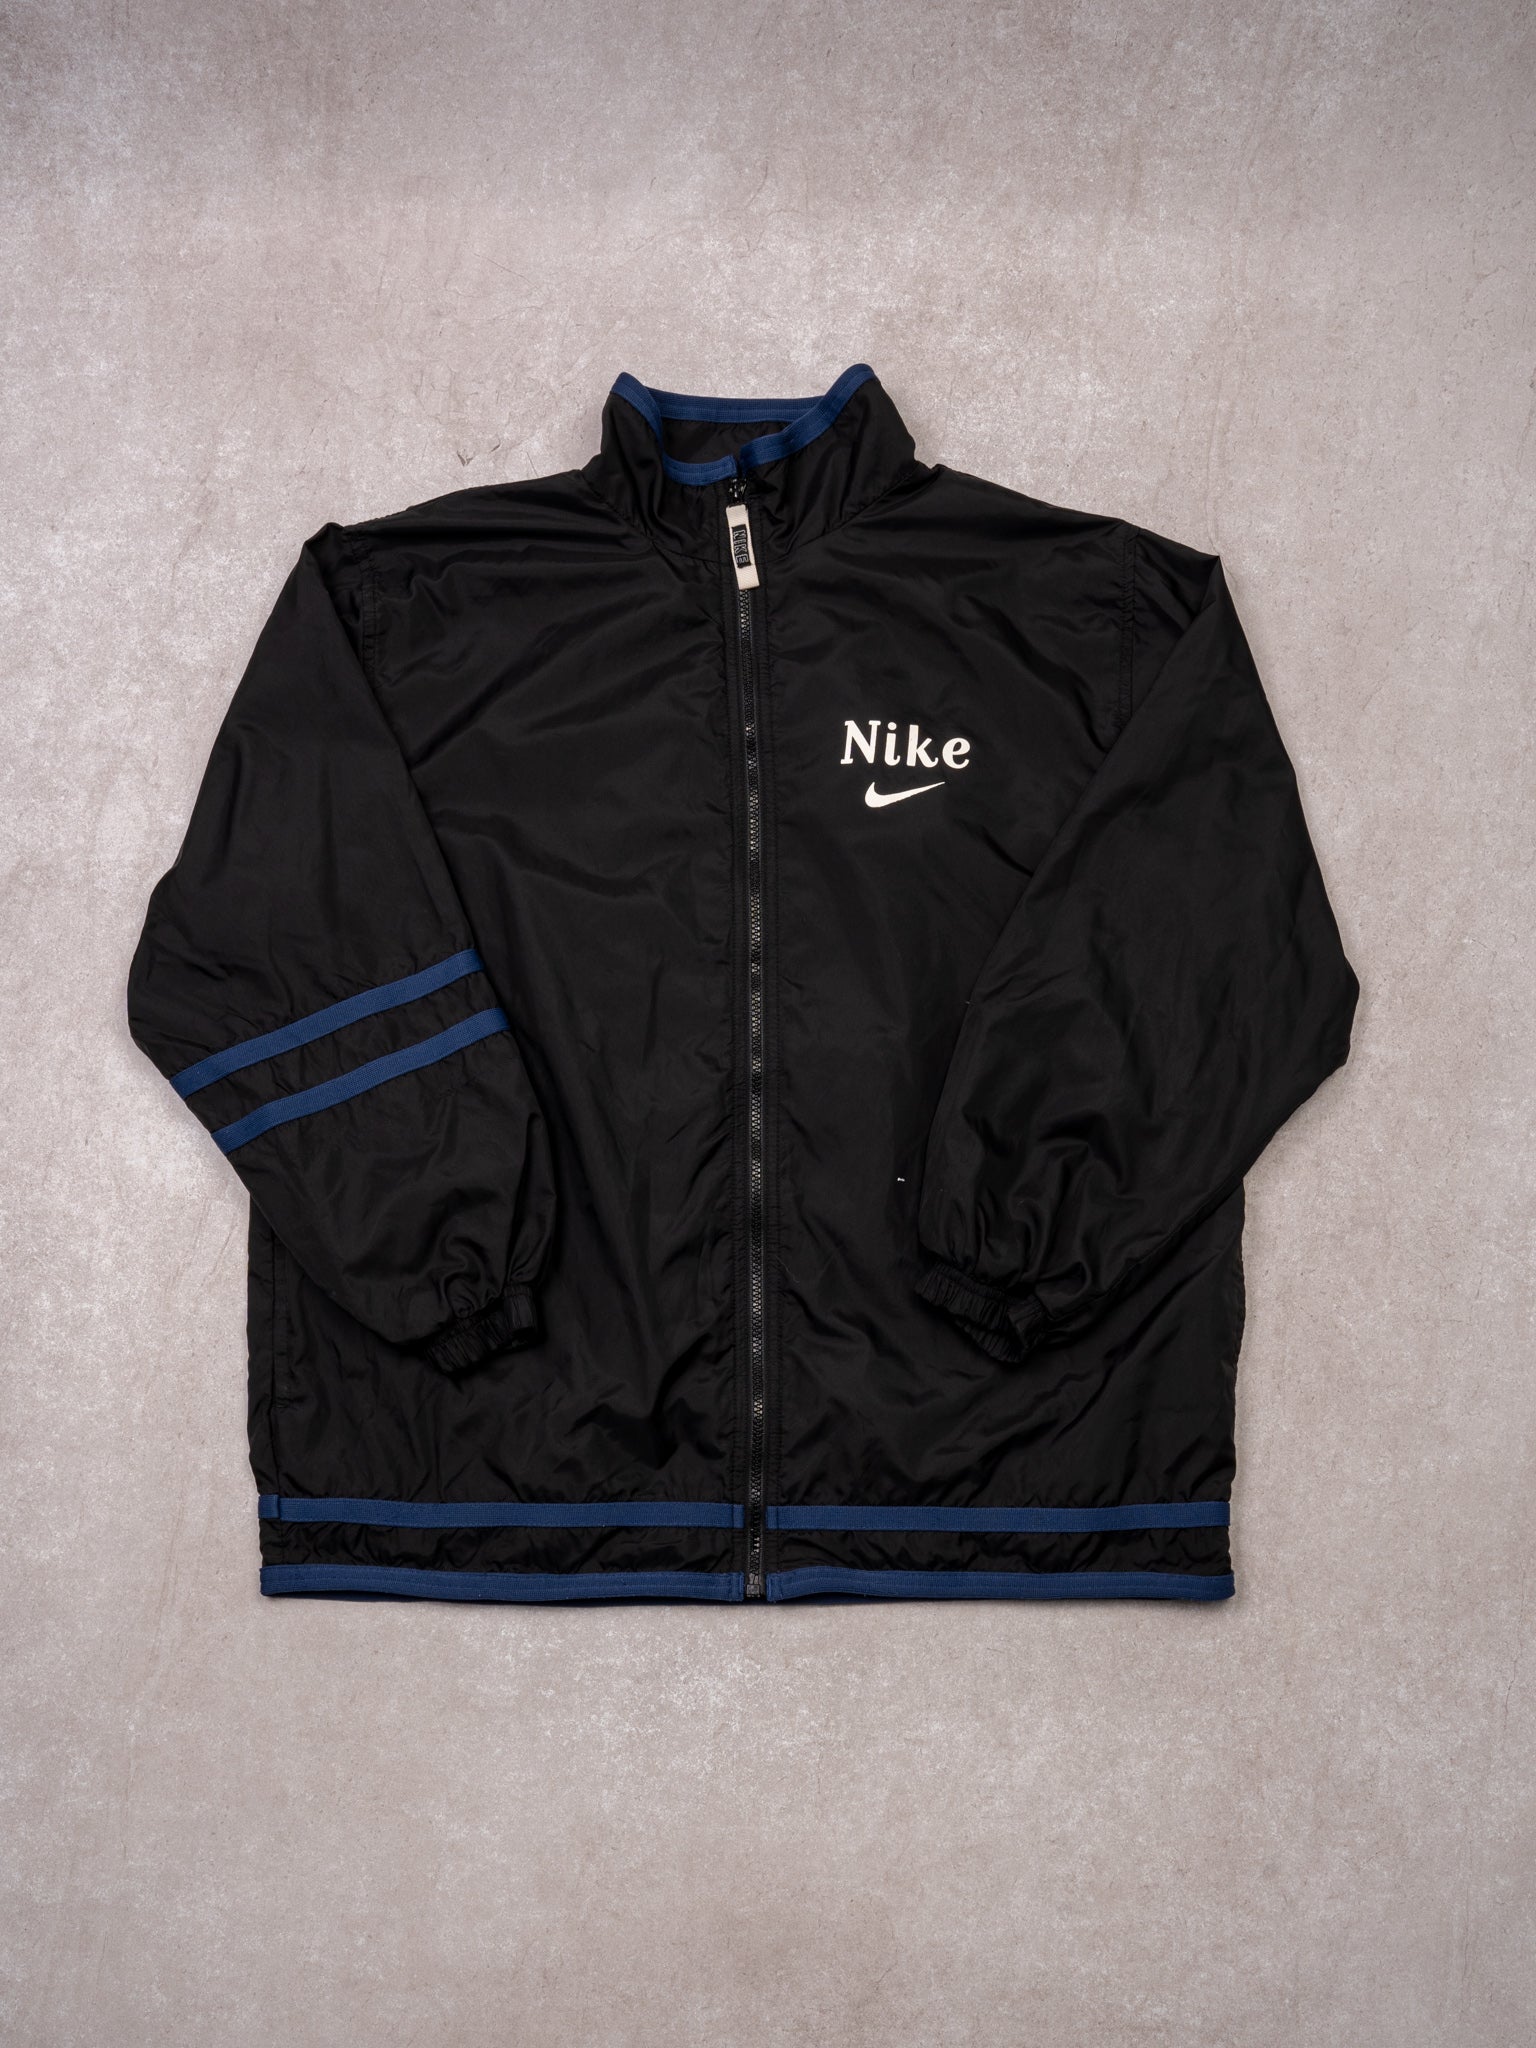 Vintage 90s Black + Blue Nike Zip Up Windbreaker (L)